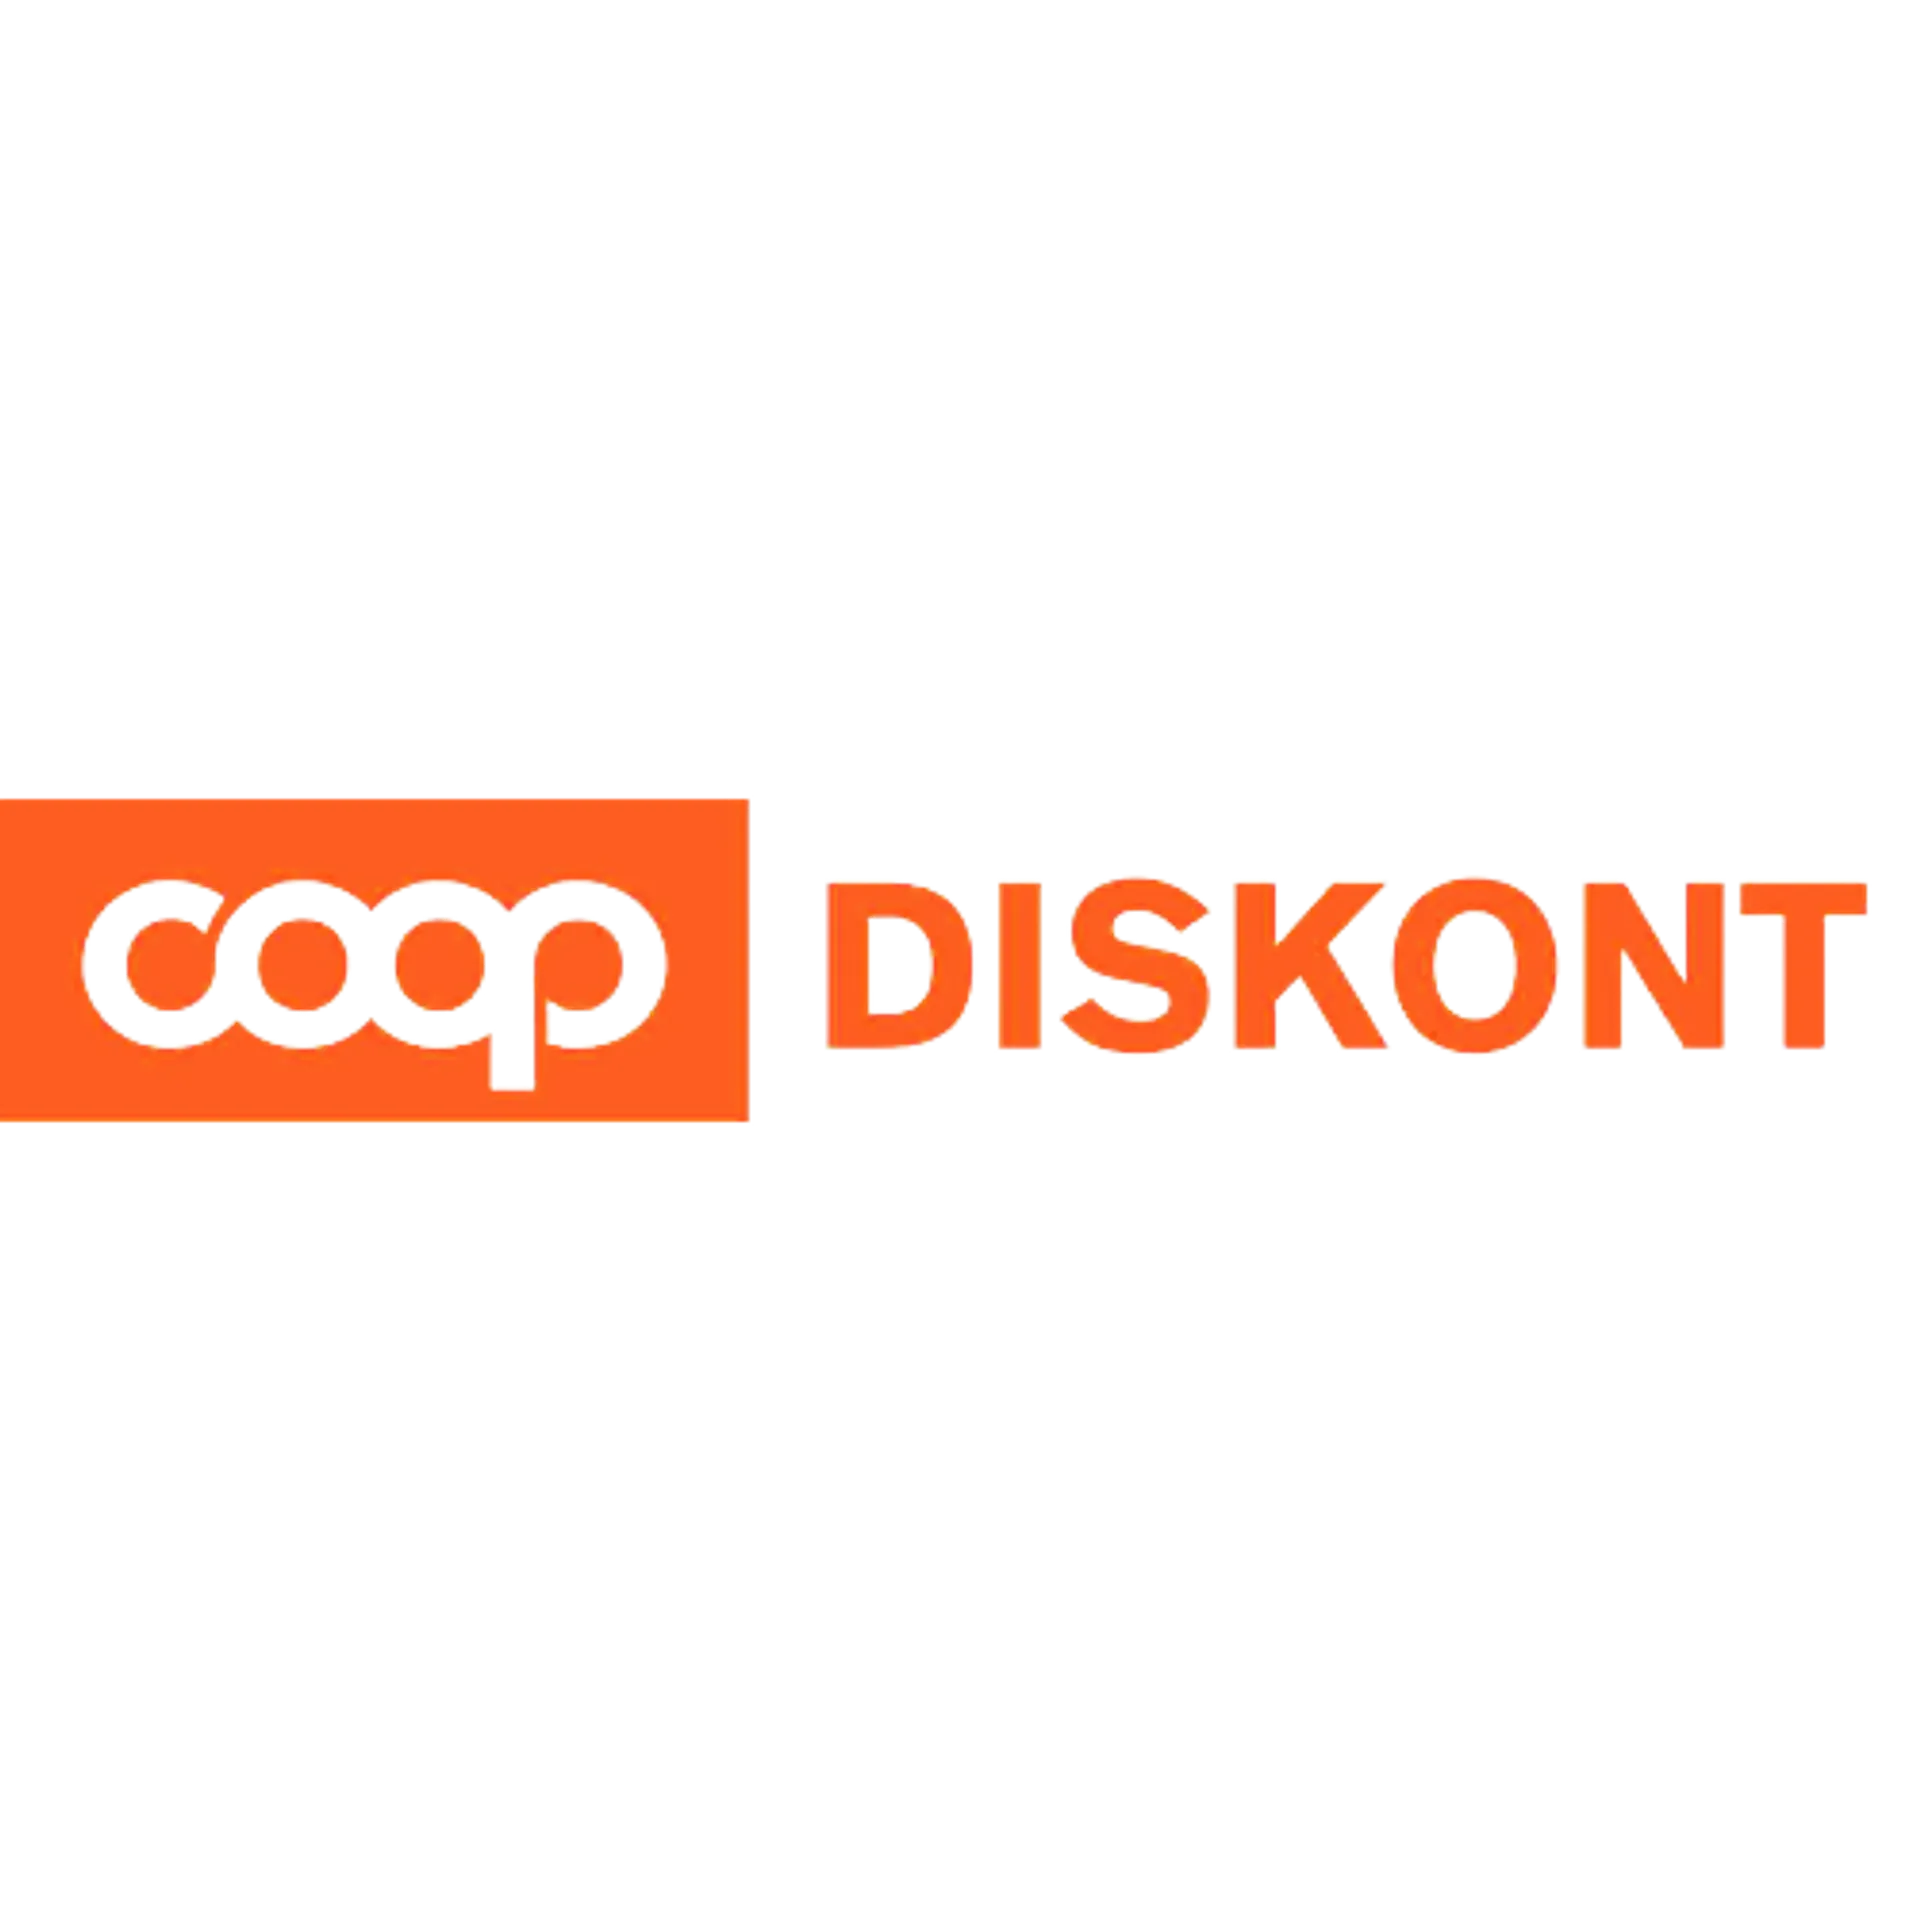 COOP DISKONT logo